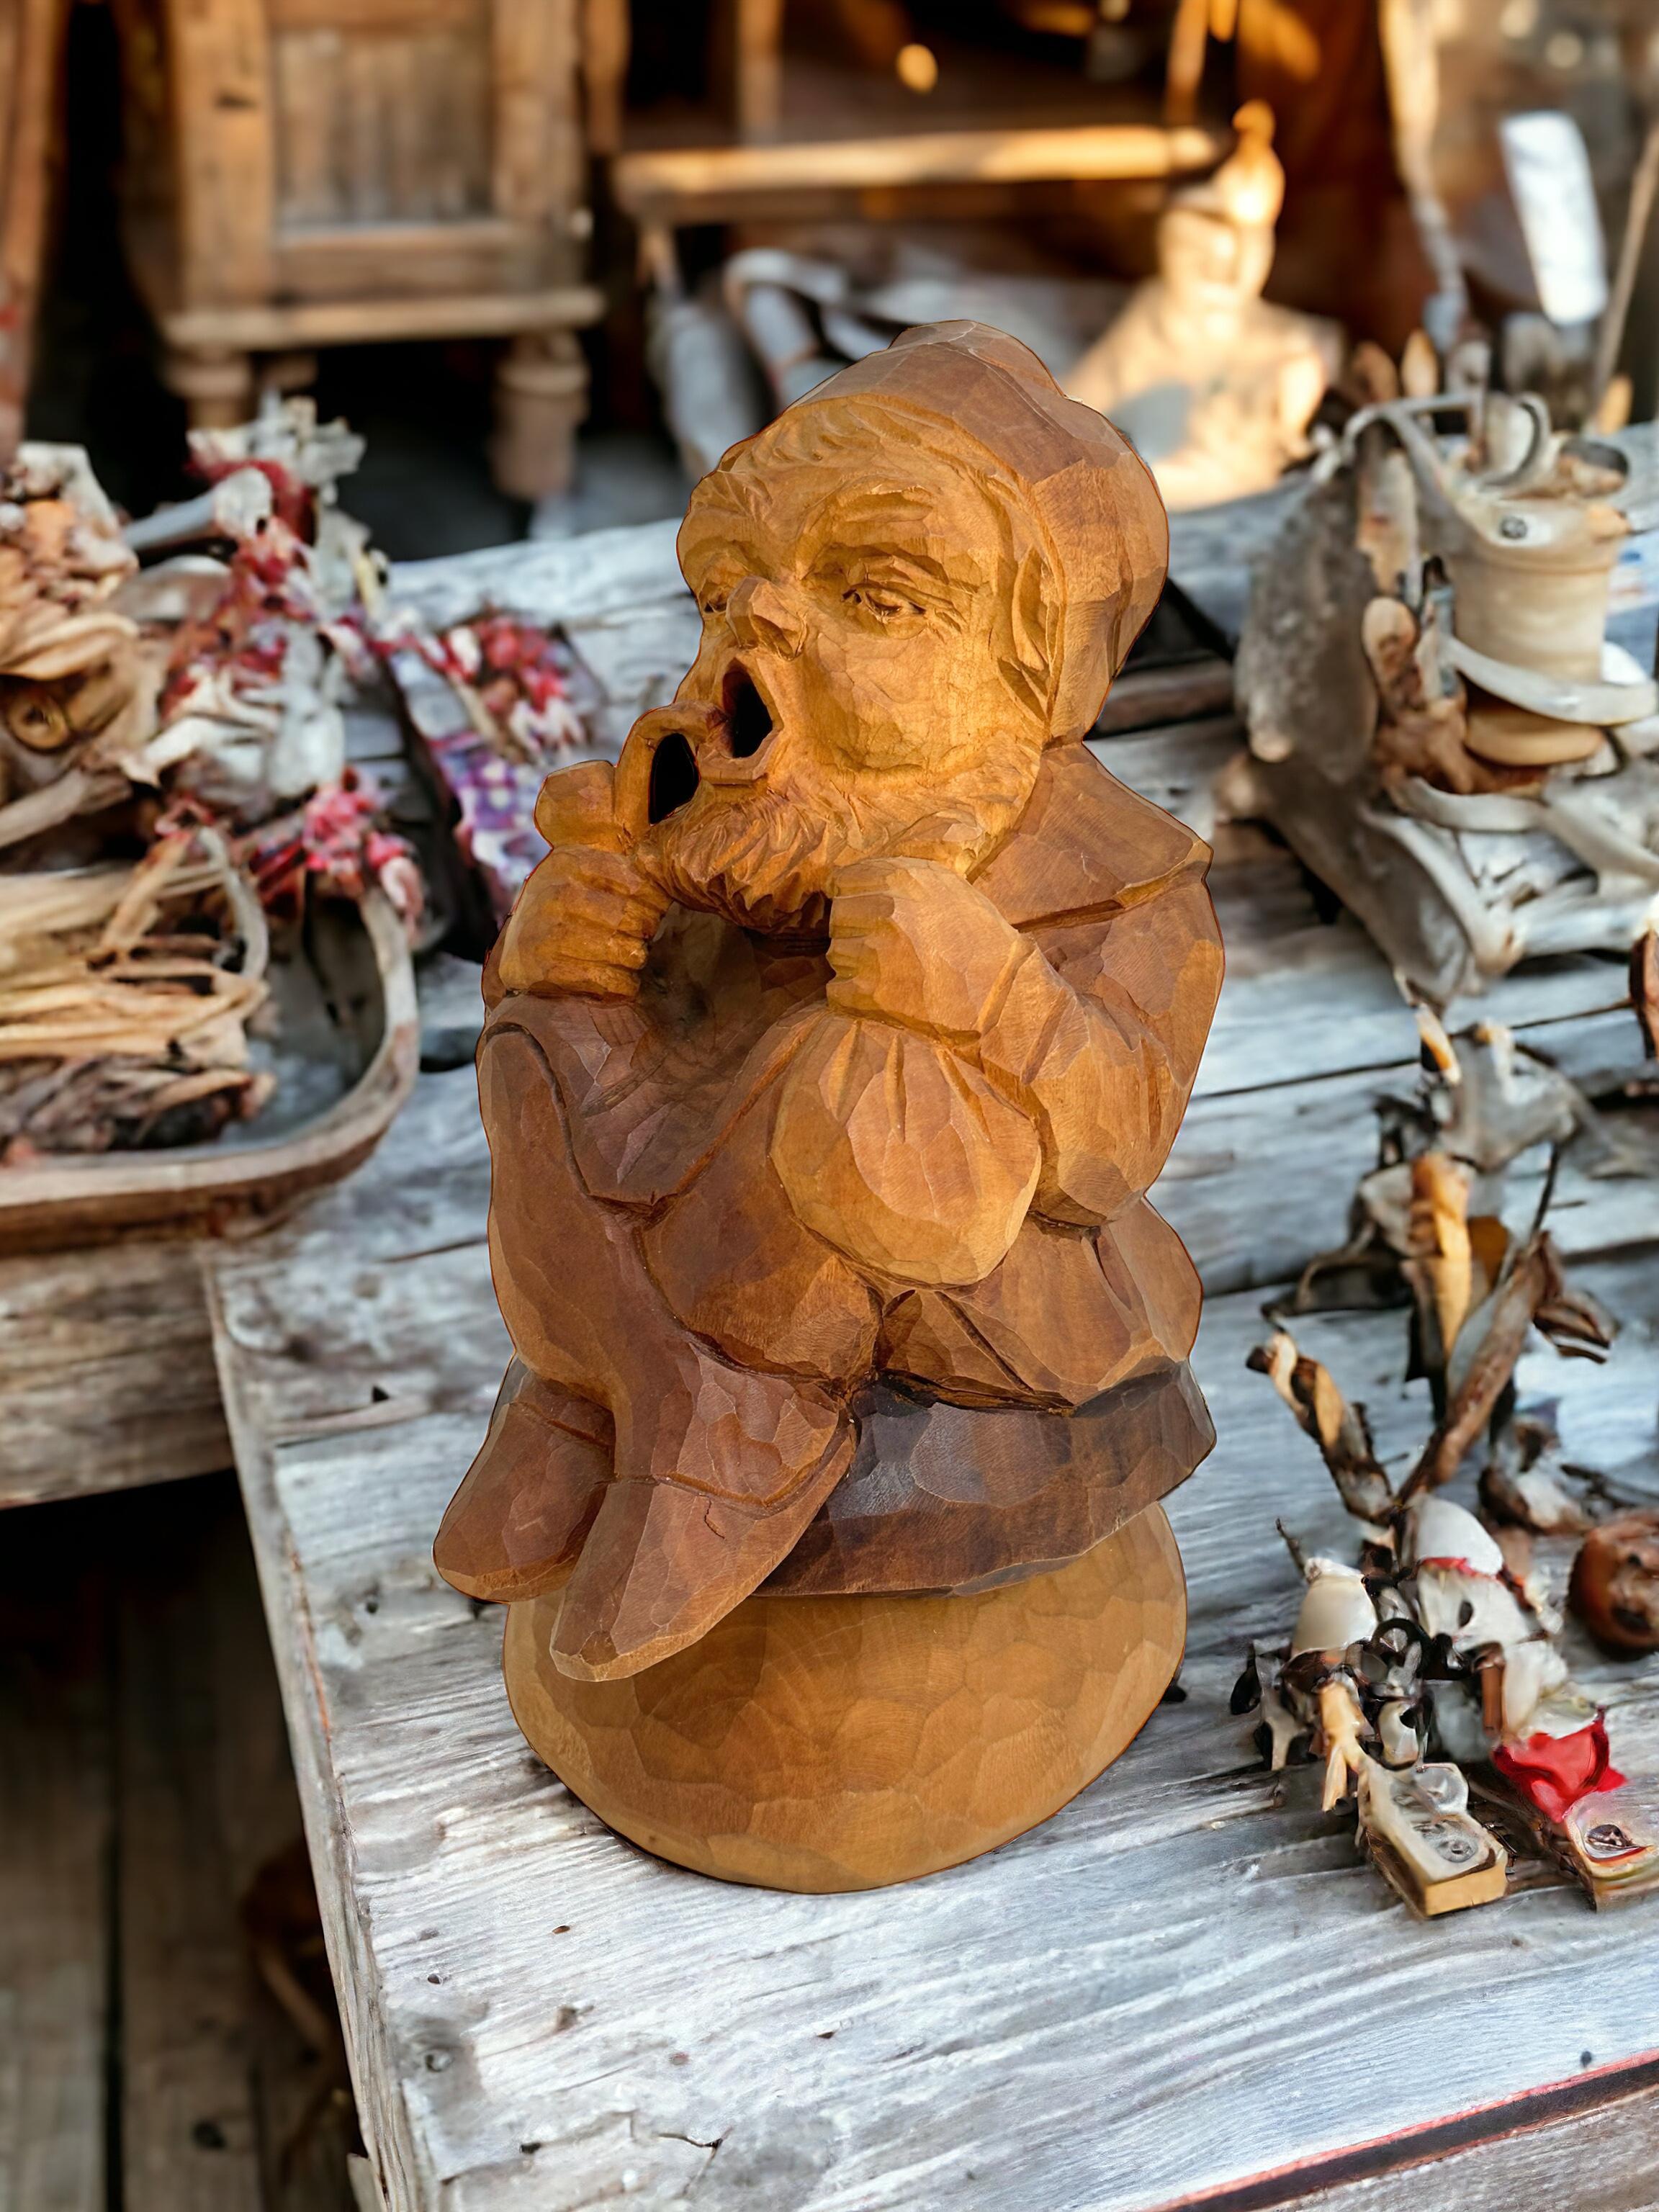 Magnifique figurine de fumeur en bois sculptée à la main, trouvée lors d'une vente immobilière à Nuremberg, en Allemagne. Nous pensons que cette pièce date des années 1930 ou d'une époque plus ancienne. Une belle addition à n'importe quelle pièce.